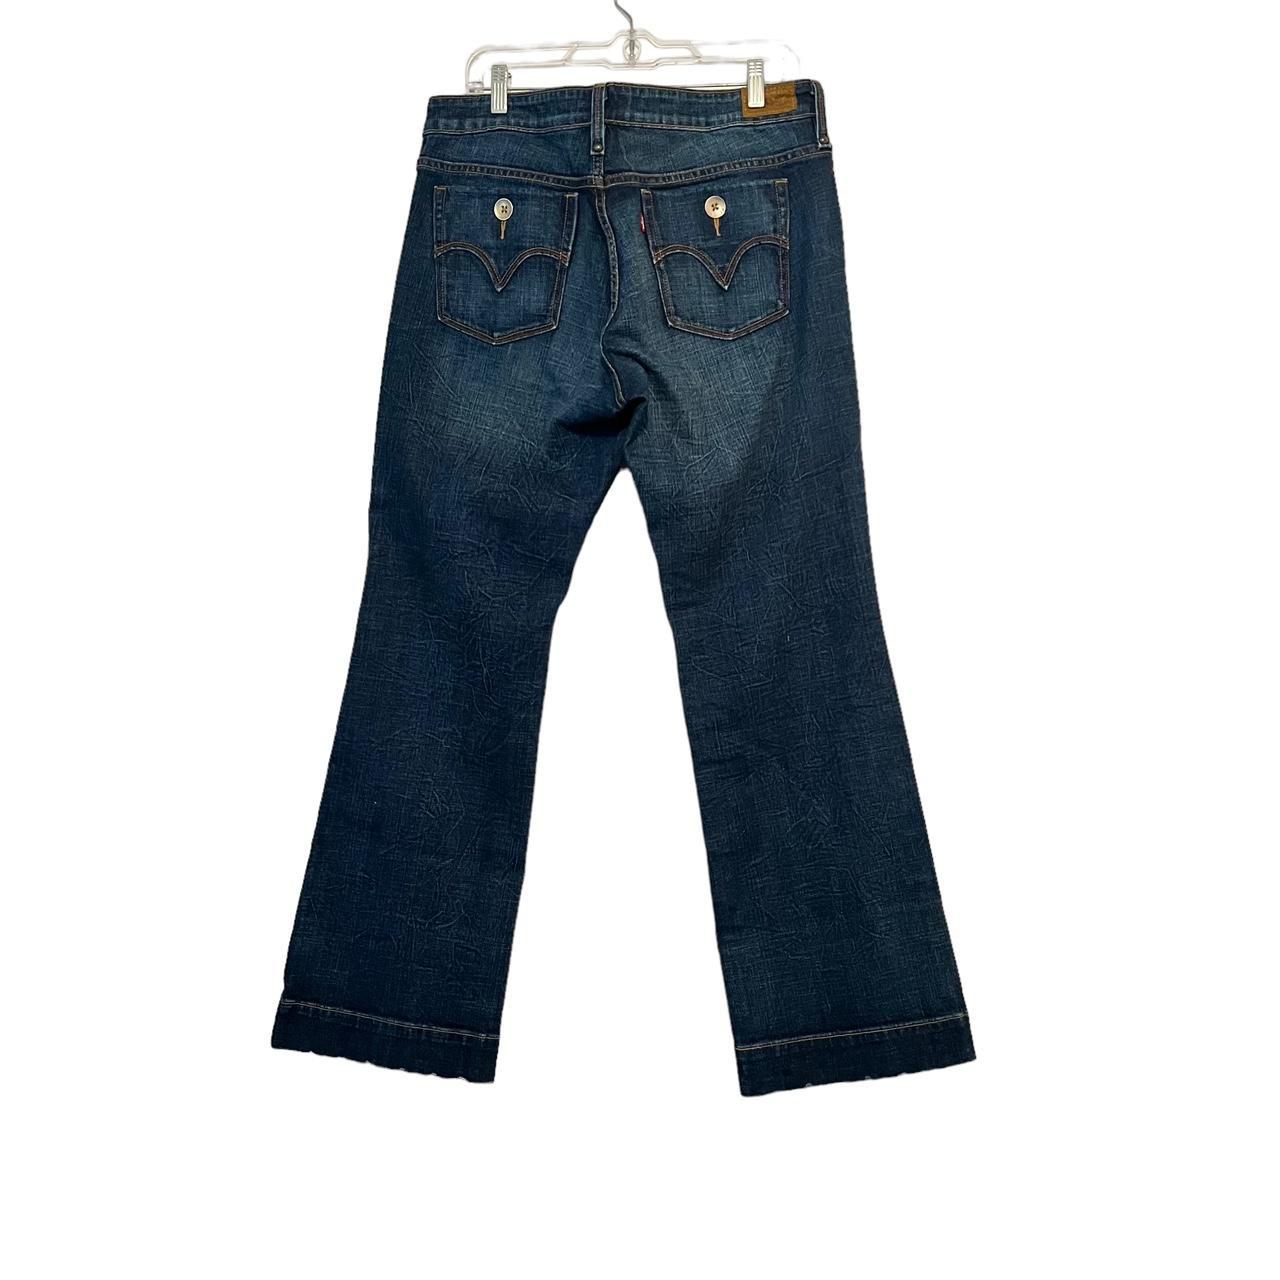 Levi’s Vintage Bootcut Women’s Jeans Size 14... - Depop